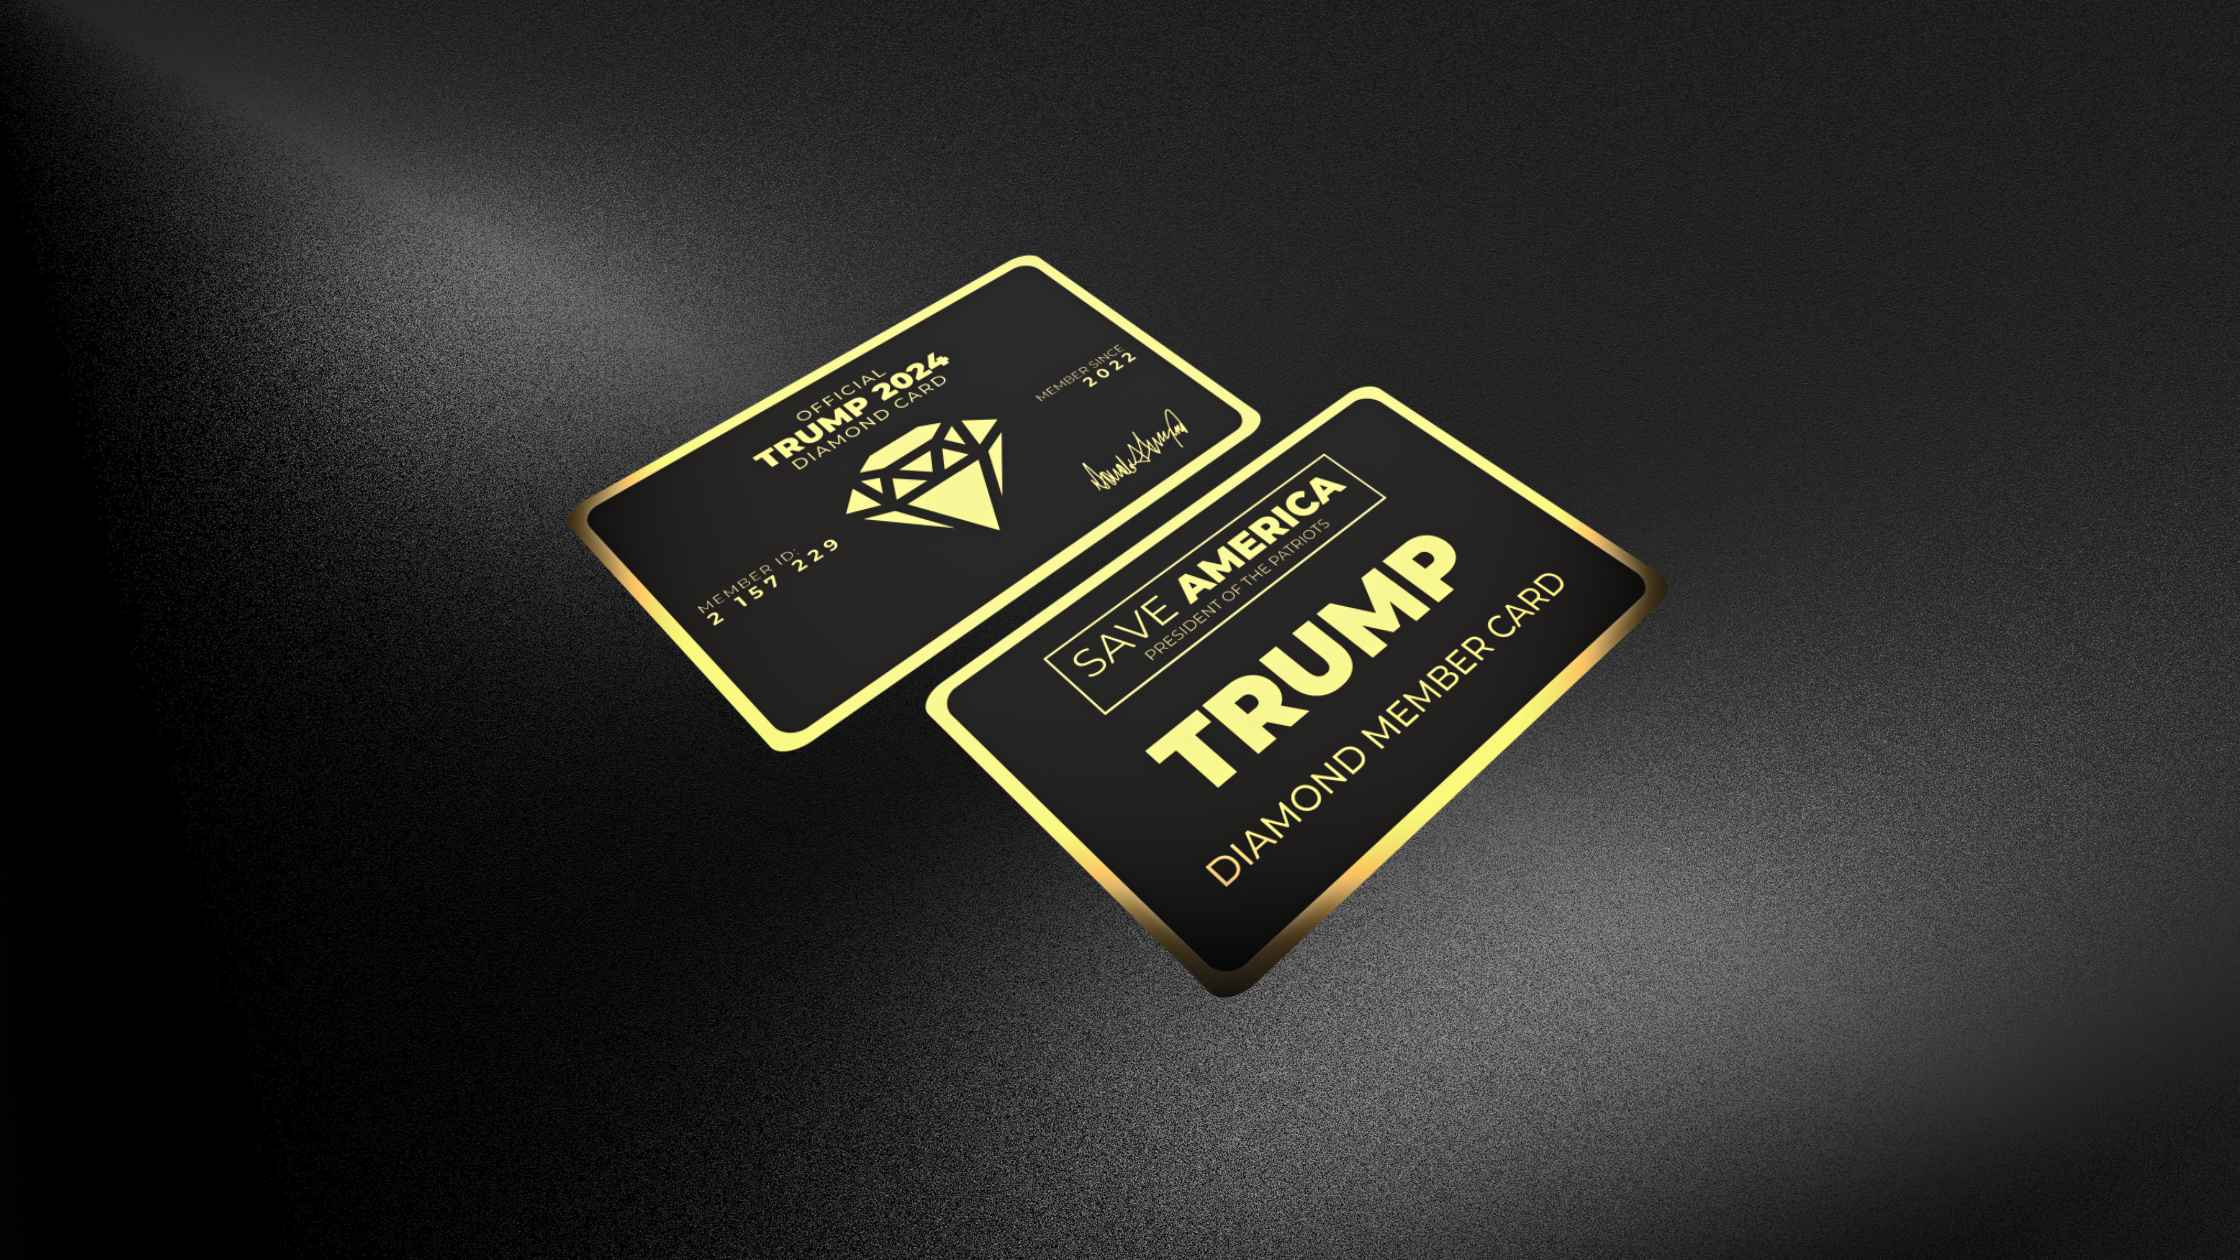 Trump 2024 Diamond Card Review